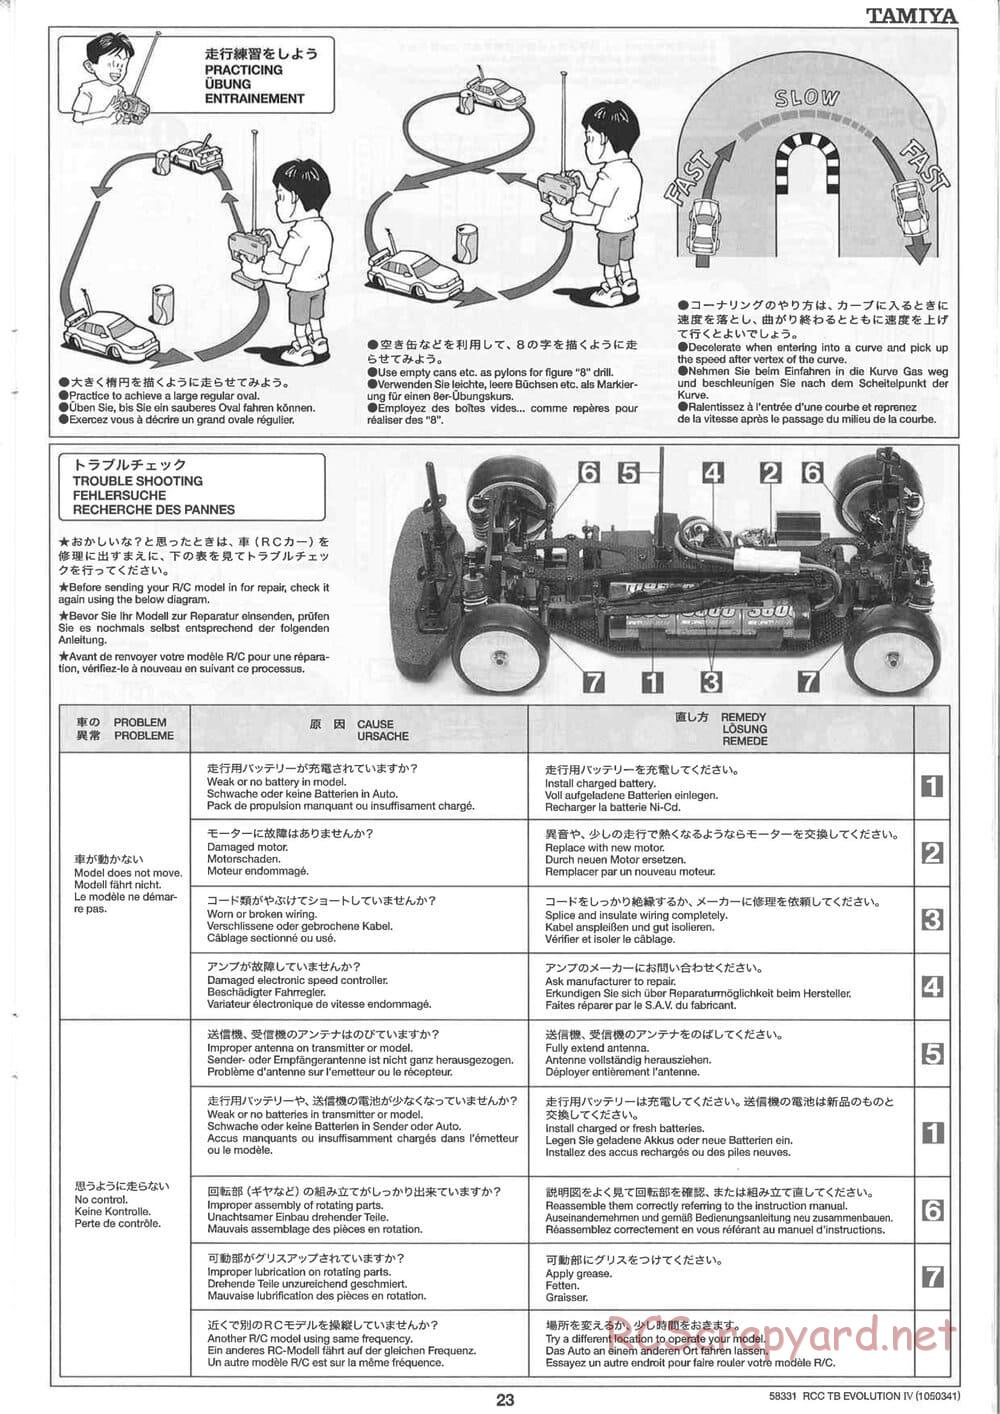 Tamiya - TB Evolution IV Chassis - Manual - Page 23